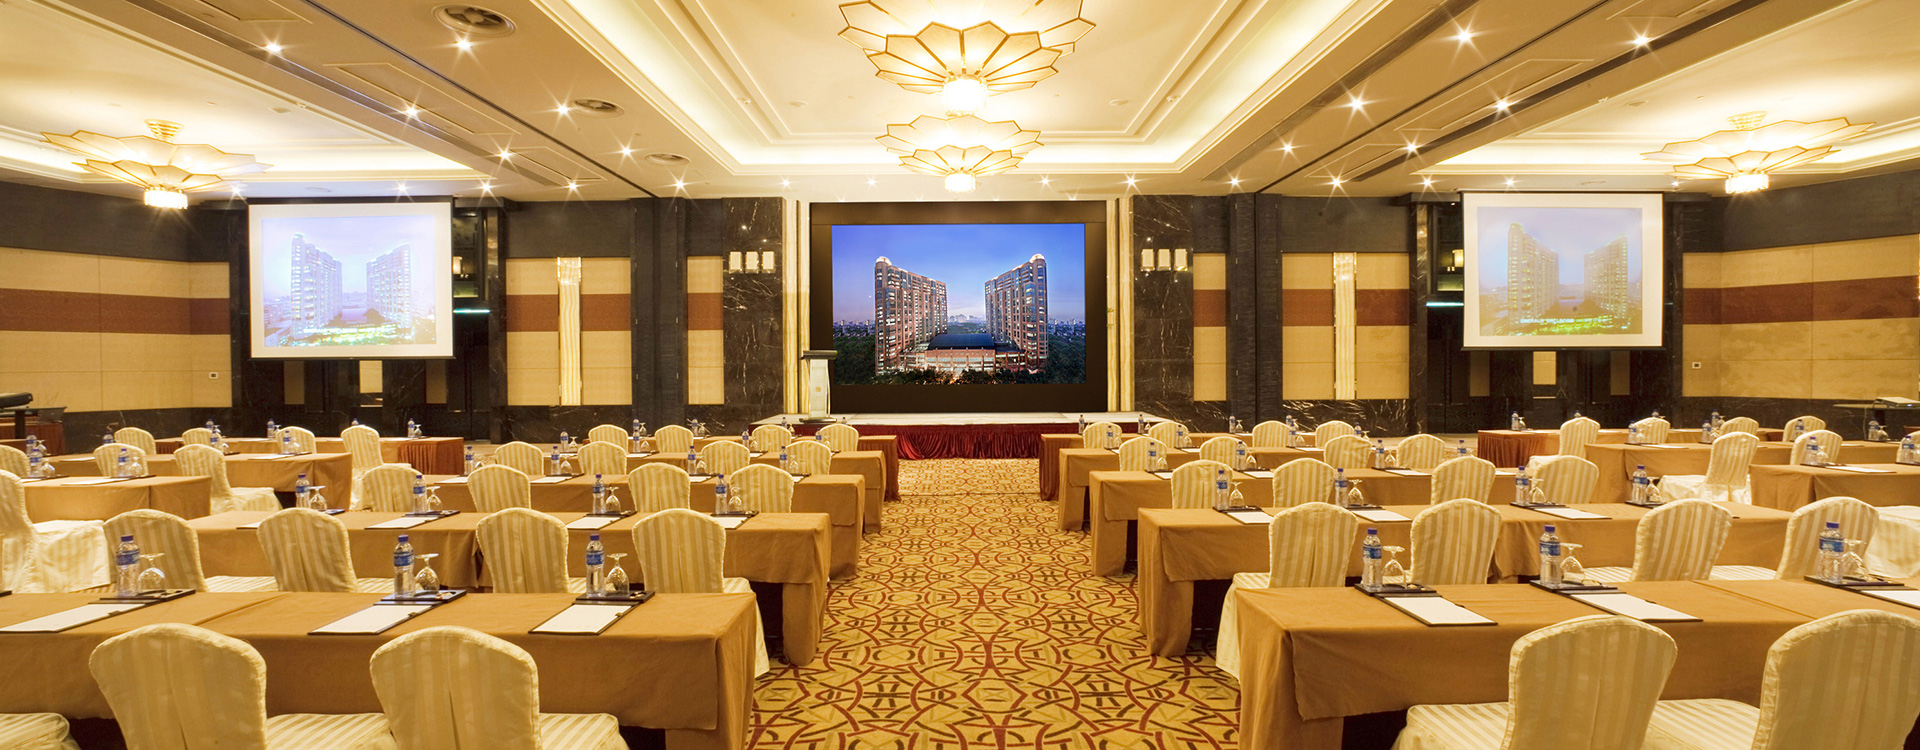 Hong Kong Meeting Venues & Event Venues | Regal Airport Hotel